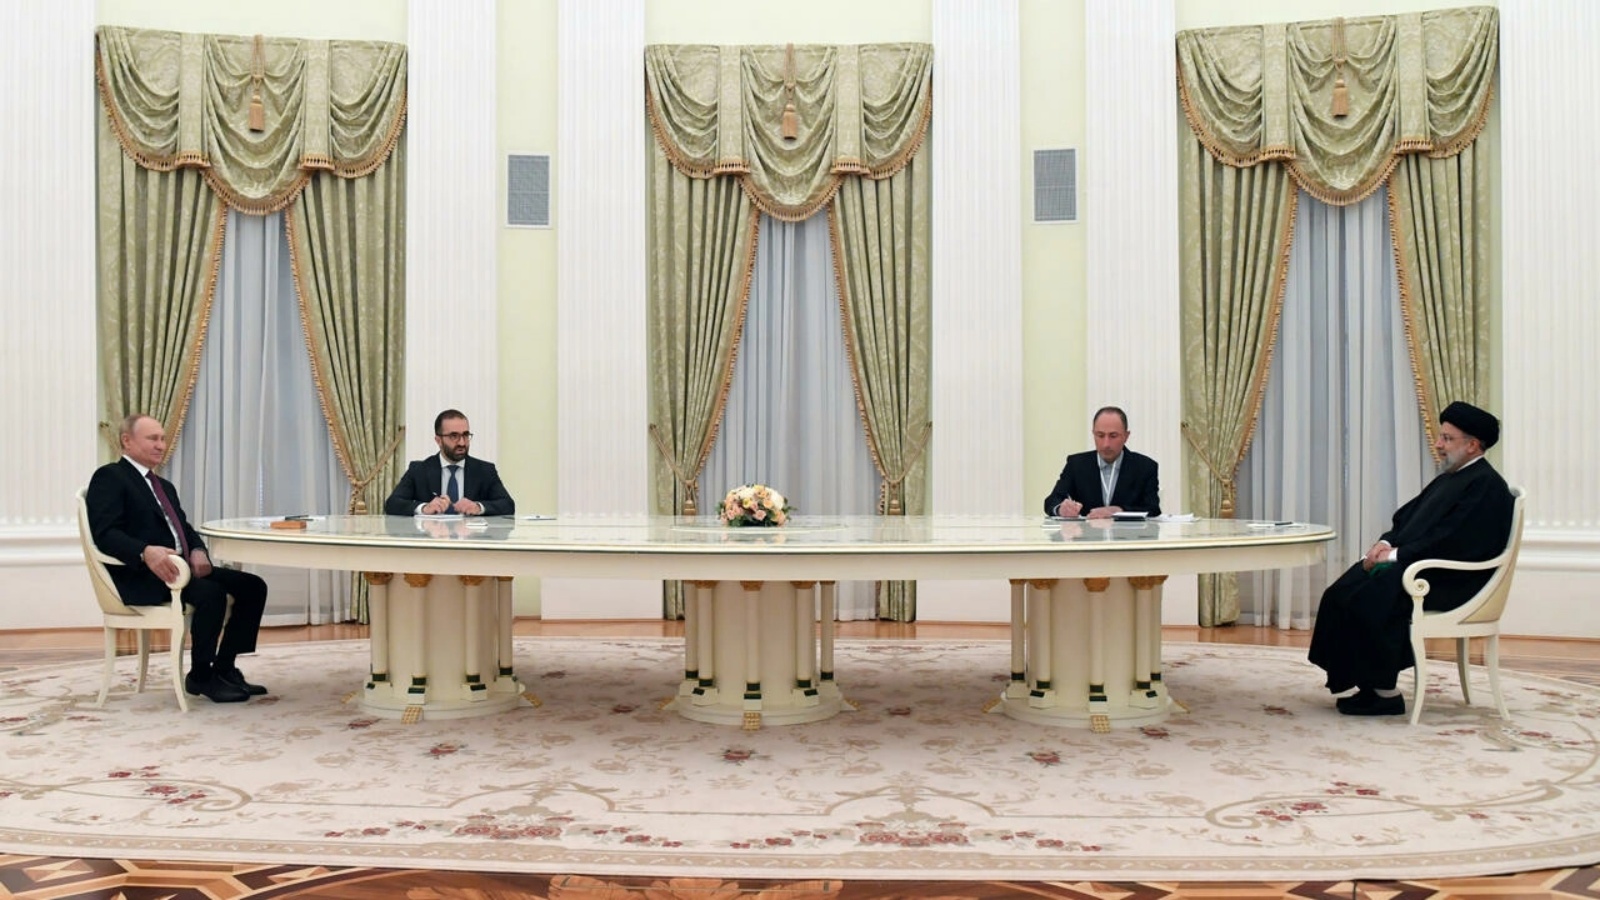 الرئيس الروسي فلاديمير بوتين (يسار) وهو يتحدث إلى الرئيس الإيراني إبراهيم رئيسي (يمين) خلال اجتماع في موسكو بتاريخ 19 يناير 2022 